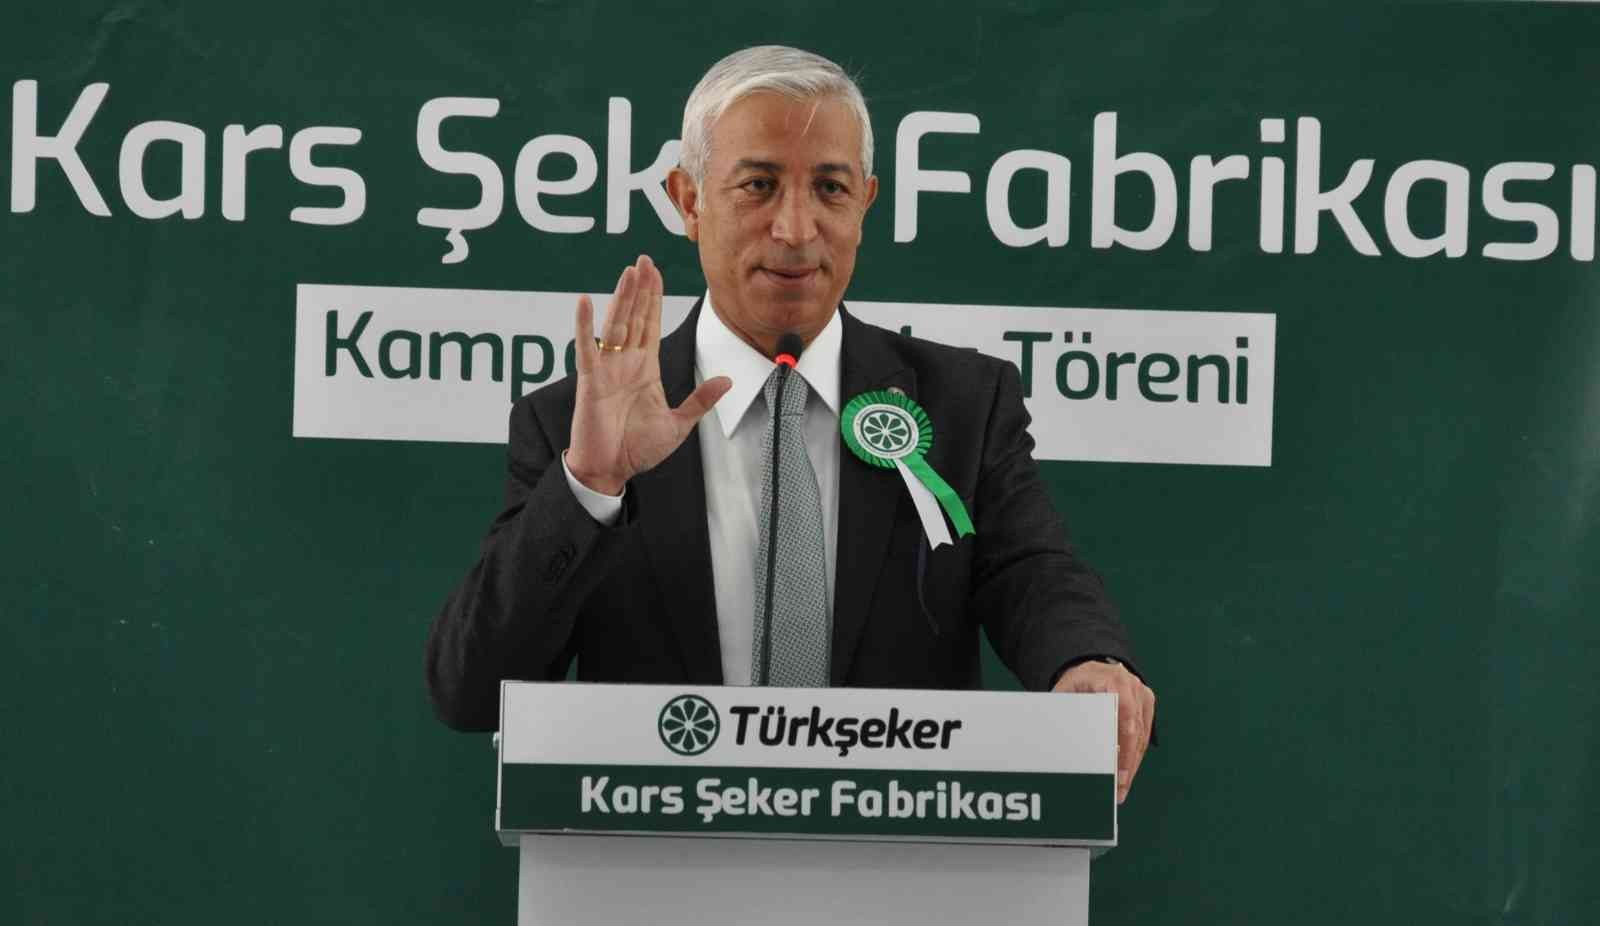 Tarım, Orman ve Köyişleri Komisyon Başkanı Prof. Dr. Kılıç: “Kars tarım şehri değil, tarıma dayalı hayvancılık şehridir” #kars